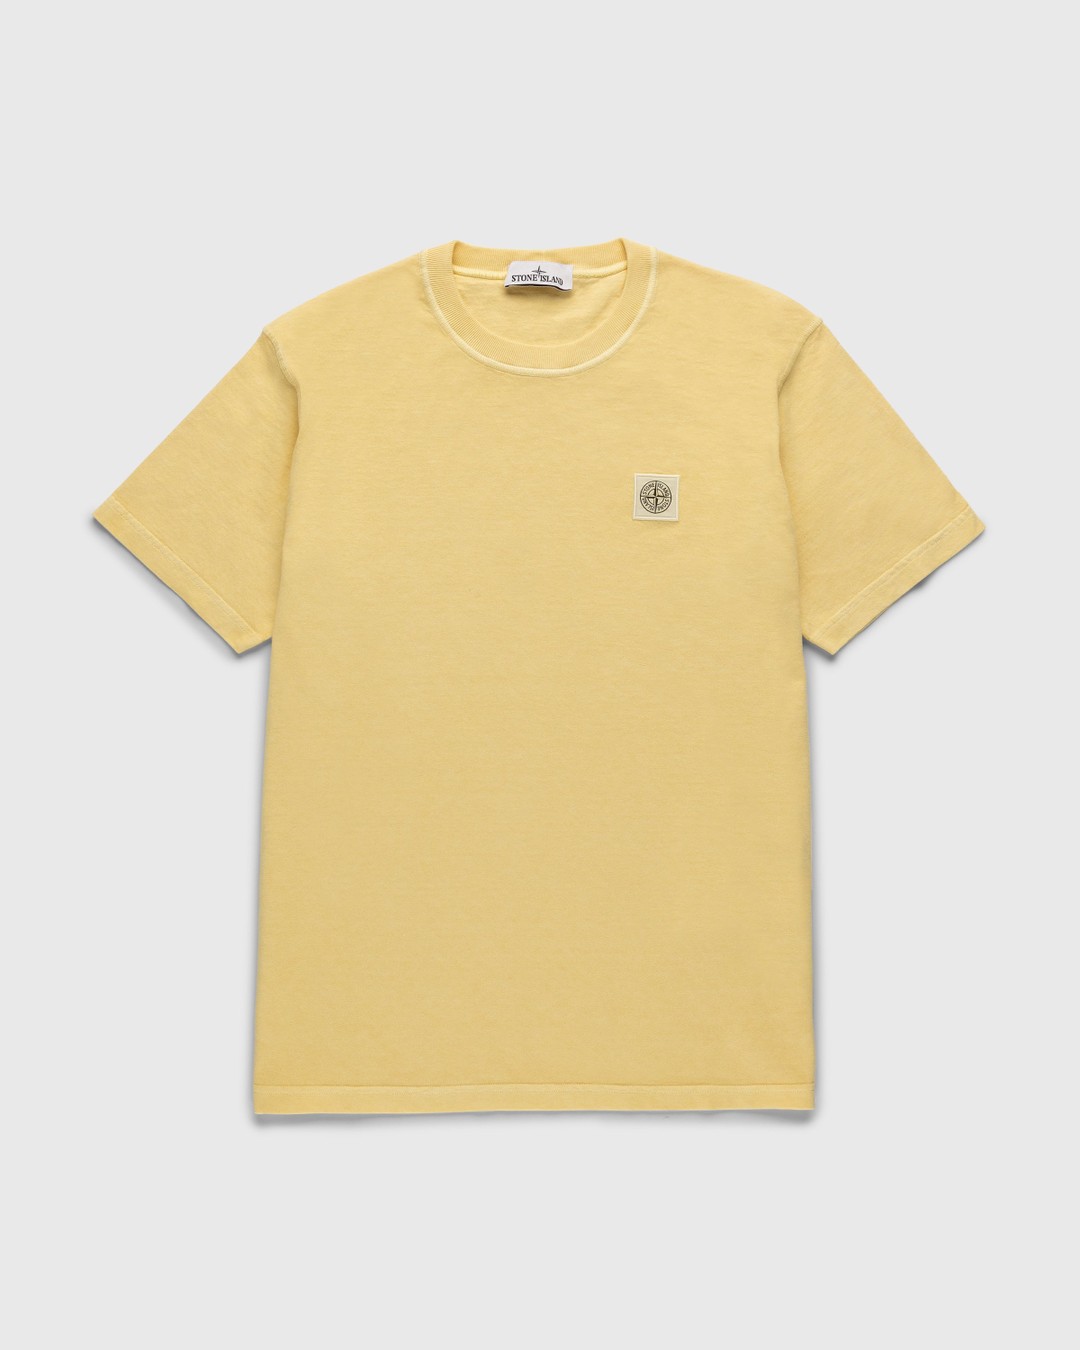 Stone Island – Fissato T-Shirt Butter - T-Shirts - Yellow - Image 1